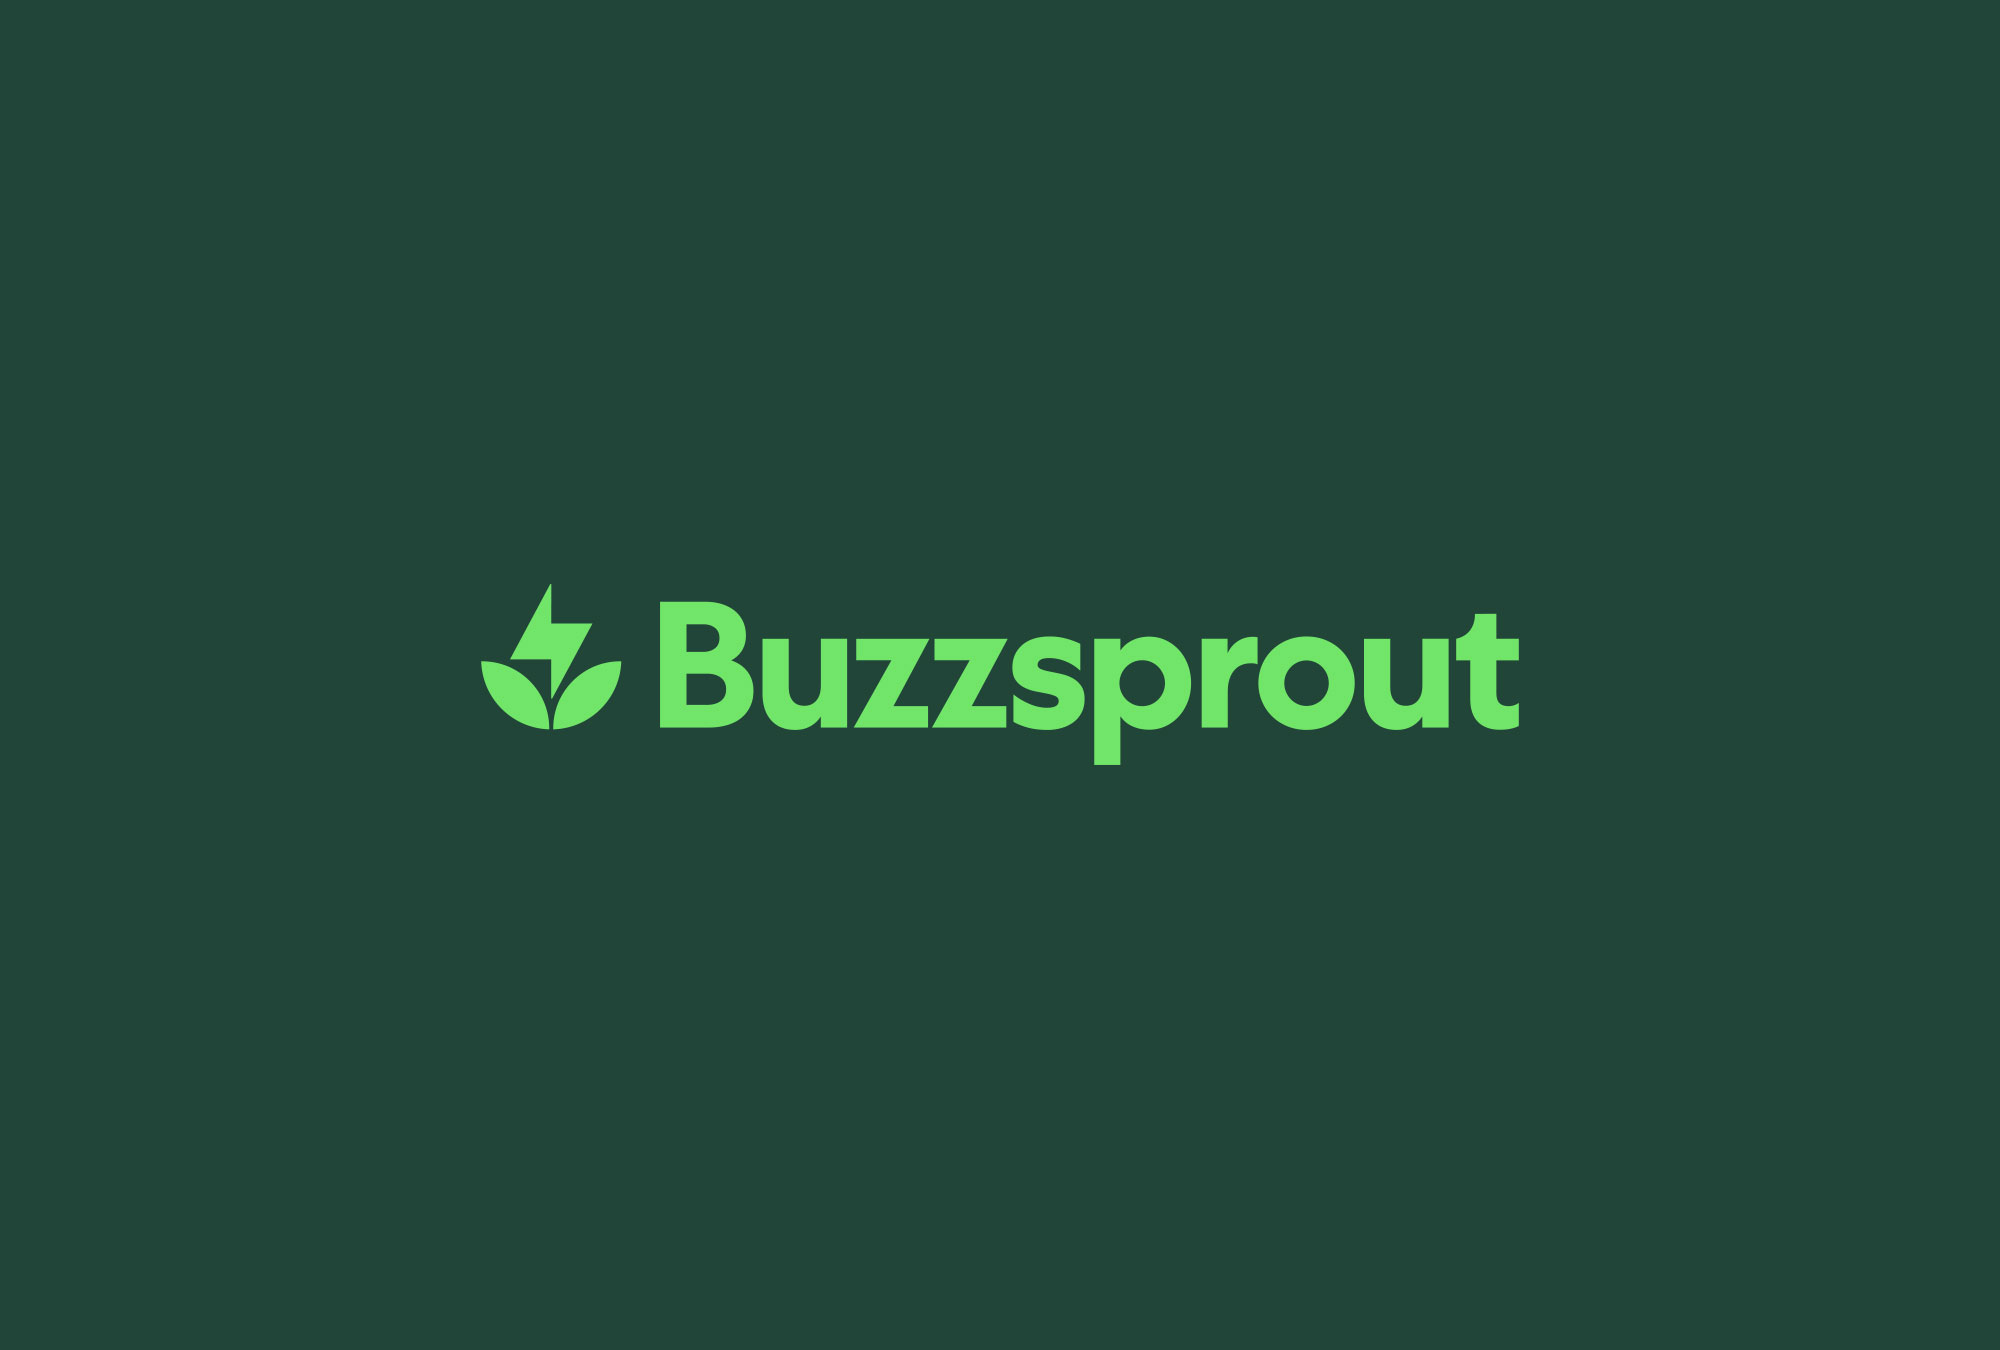 buzzsprout_logo